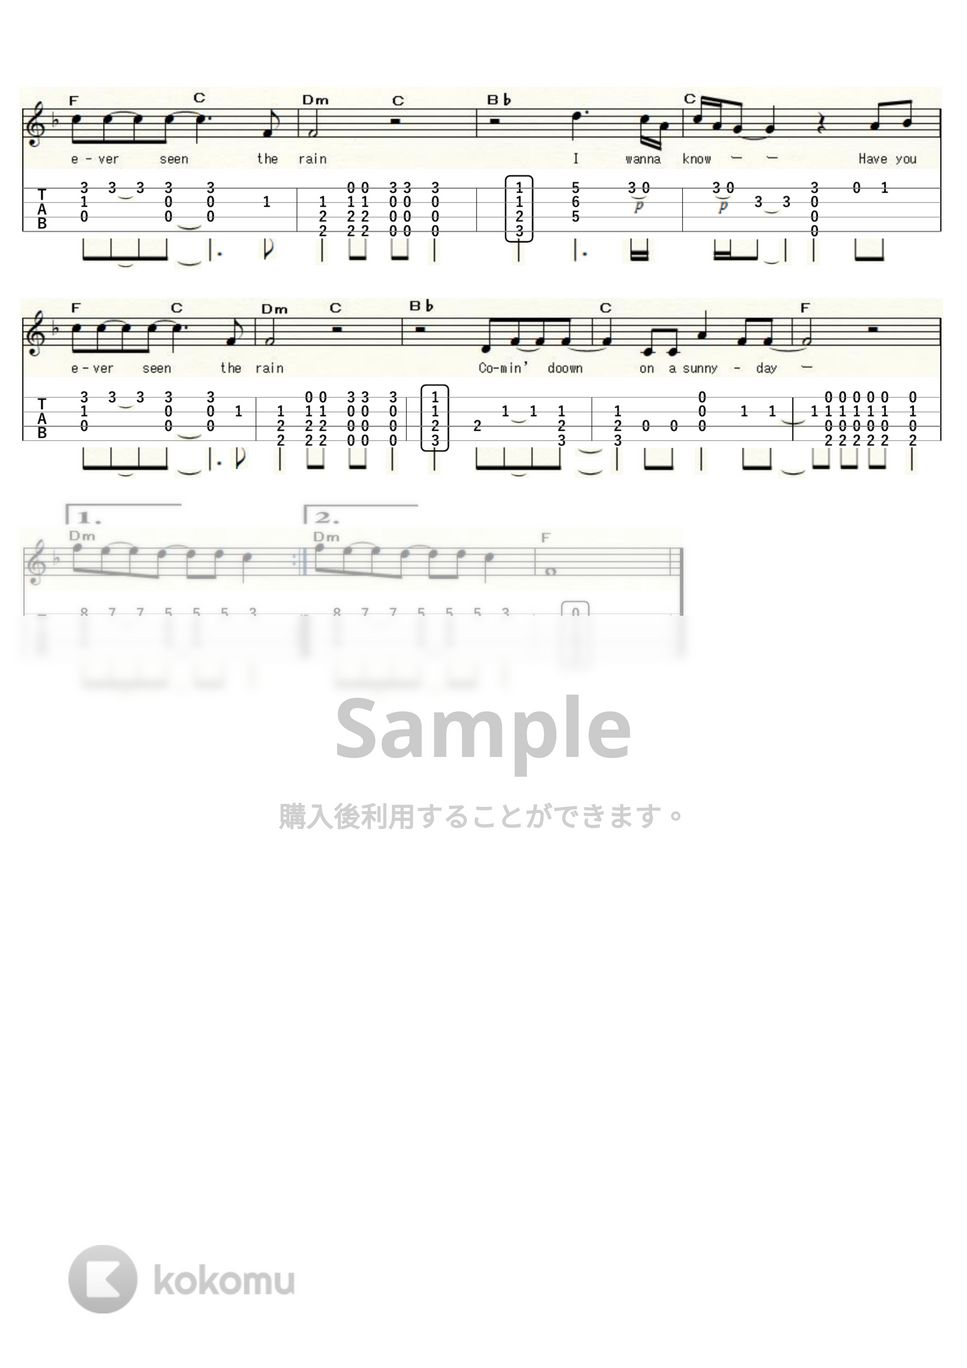 クリーデンス・クリアウォーター・リバイバル - 雨を見たかい～Have You Ever Seen the Rain～ (ｳｸﾚﾚｿﾛ / High-G・Low-G / 中級) by ukulelepapa